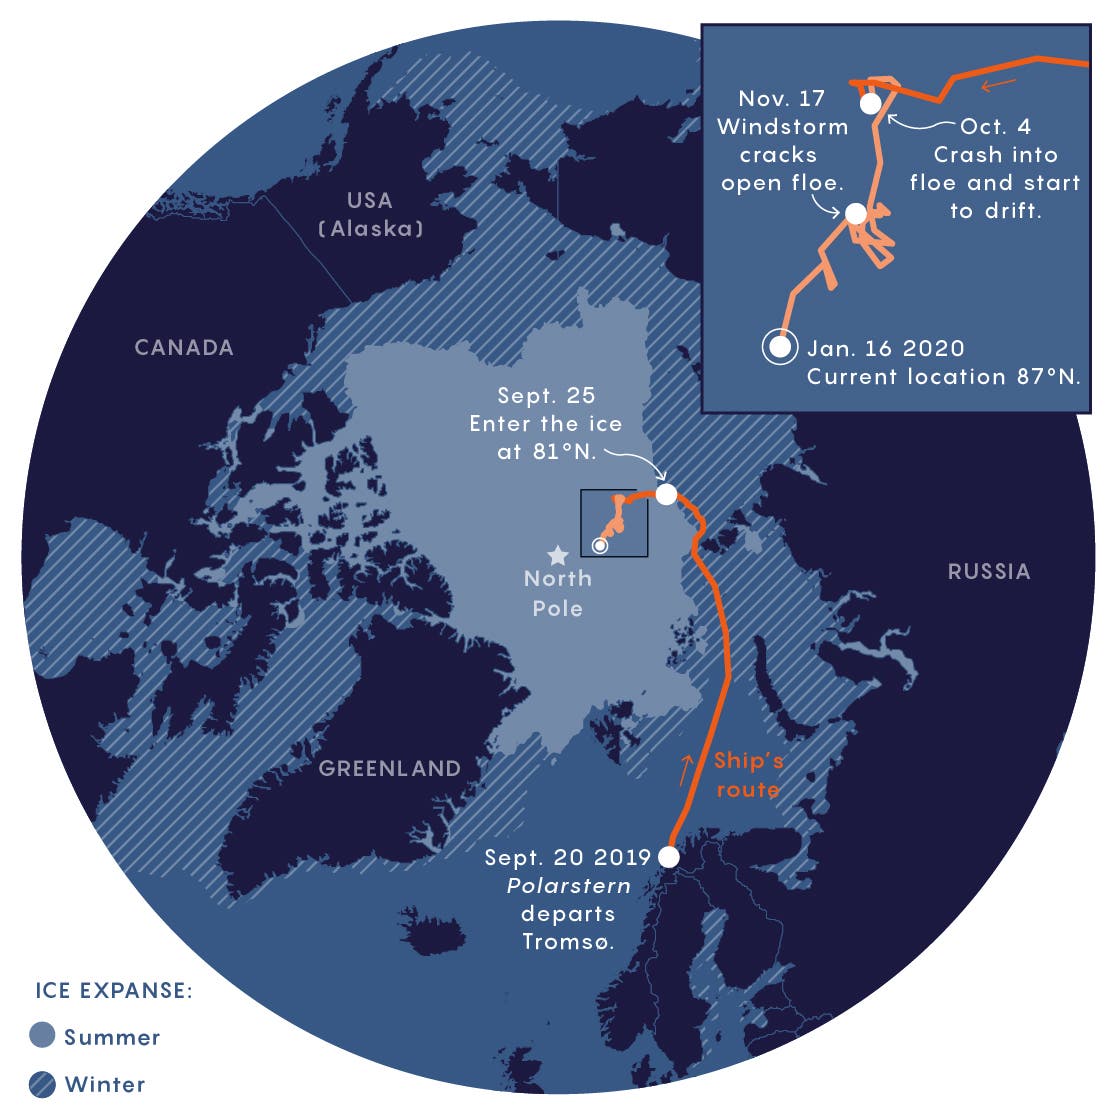 Die Route des Eisbrechers Polarstern